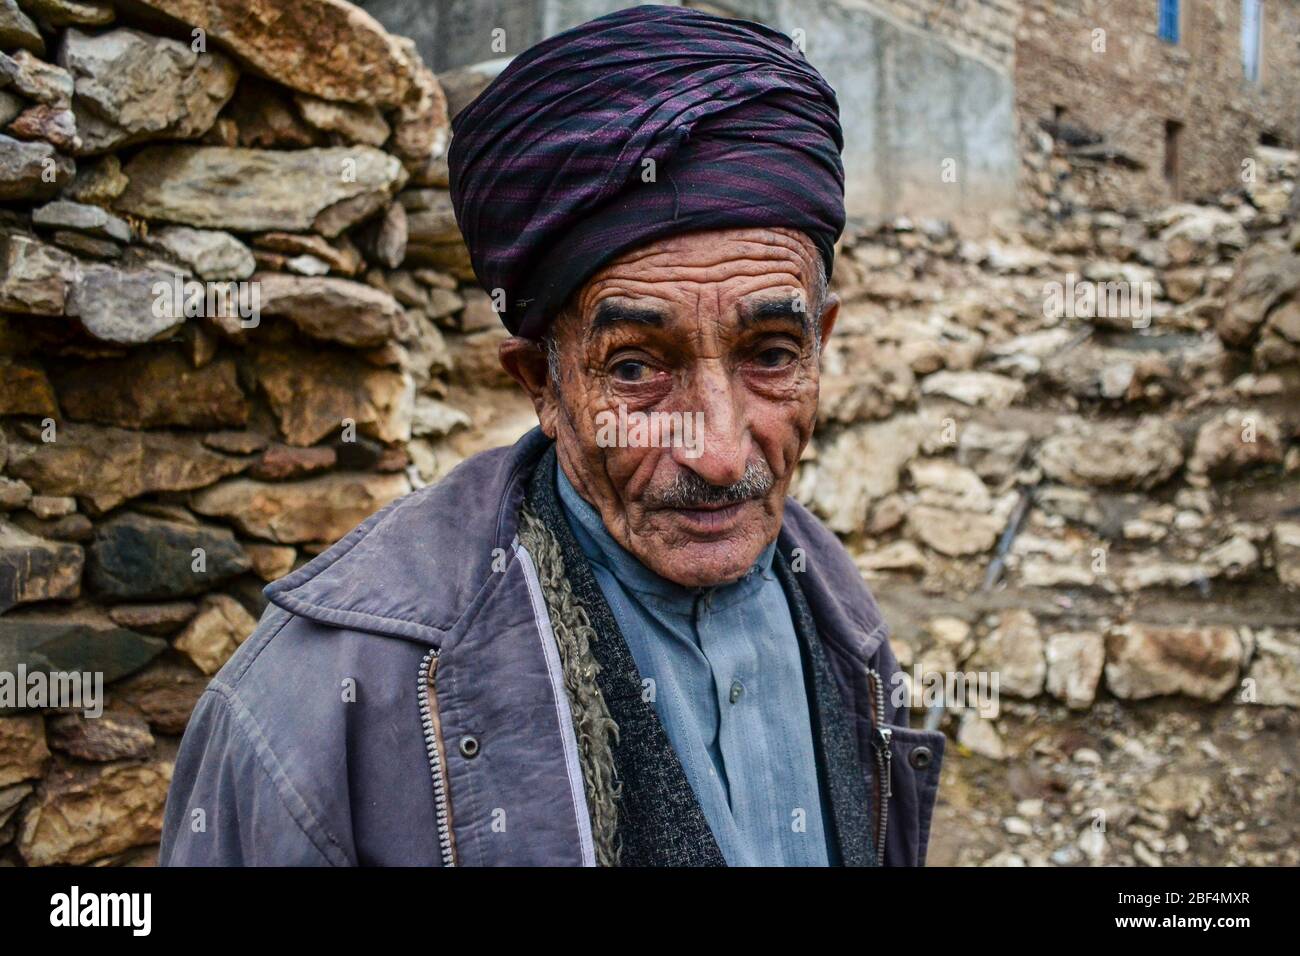 Palangan, Kurdistan iranien - 15 novembre 2013: Portrait de l'ancien homme kurde avec le visage plein de rides Banque D'Images